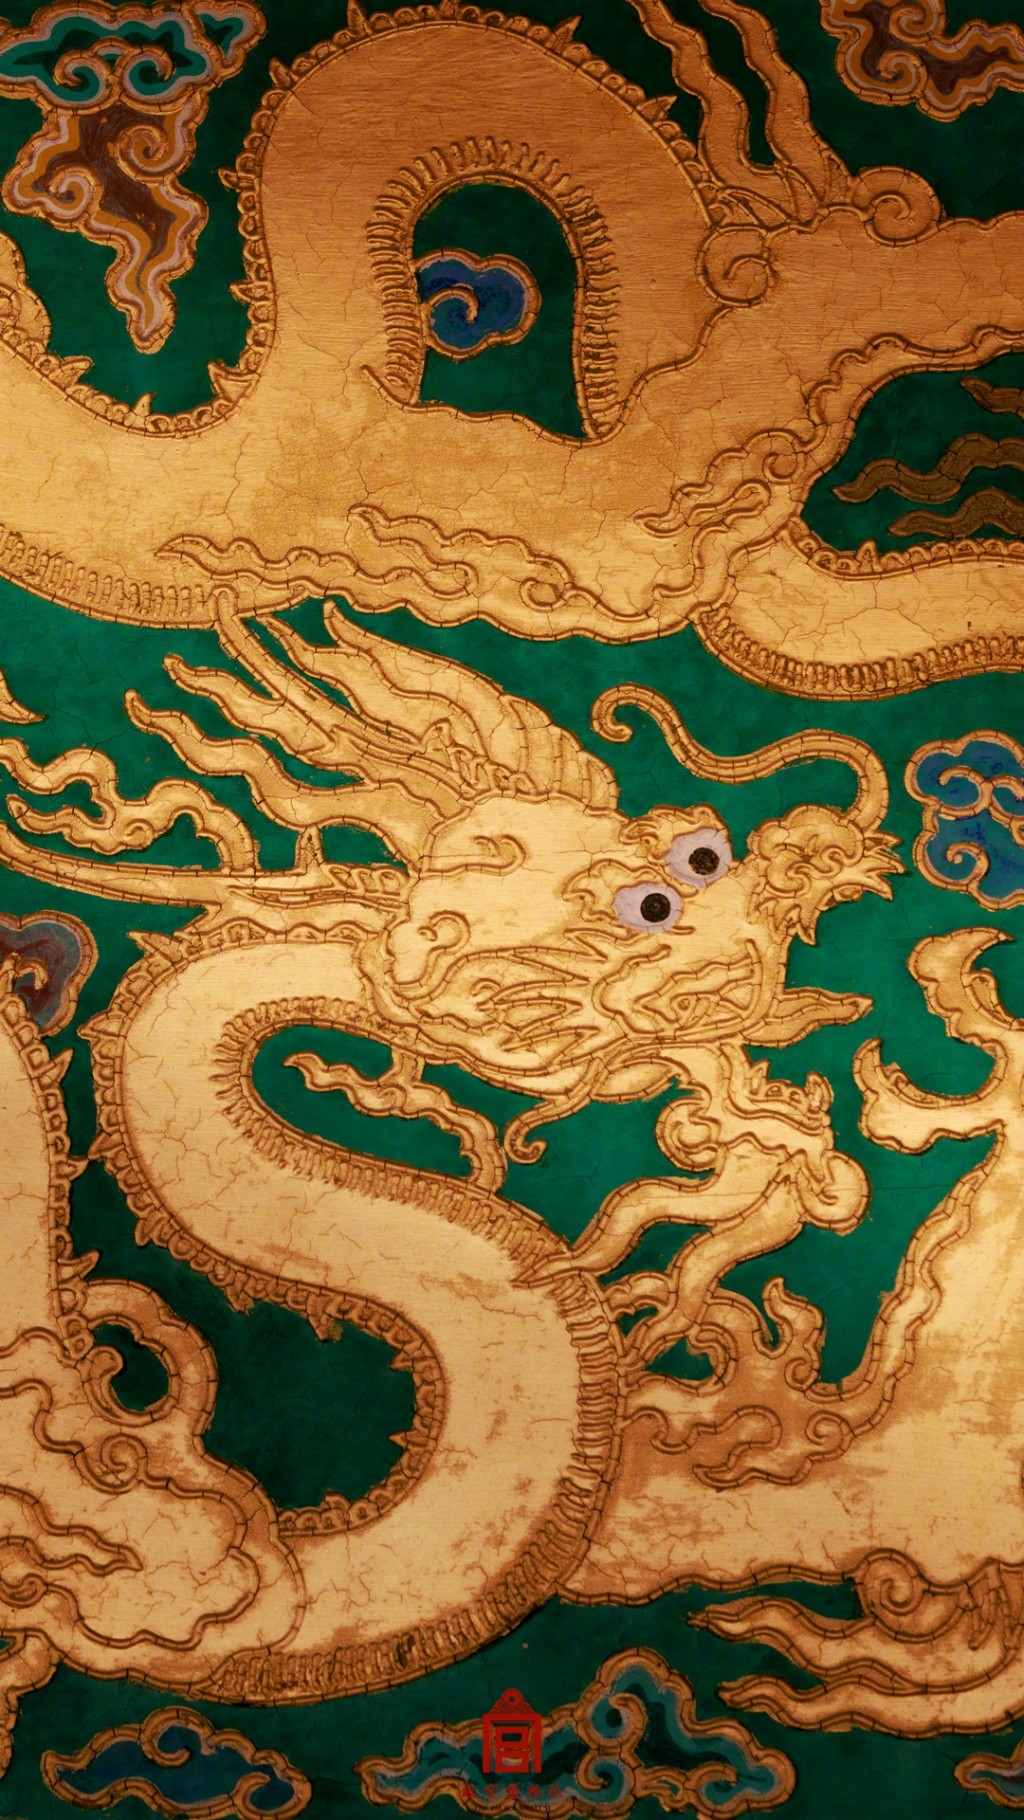 故宫新春文化龙纹建筑风景手机壁纸